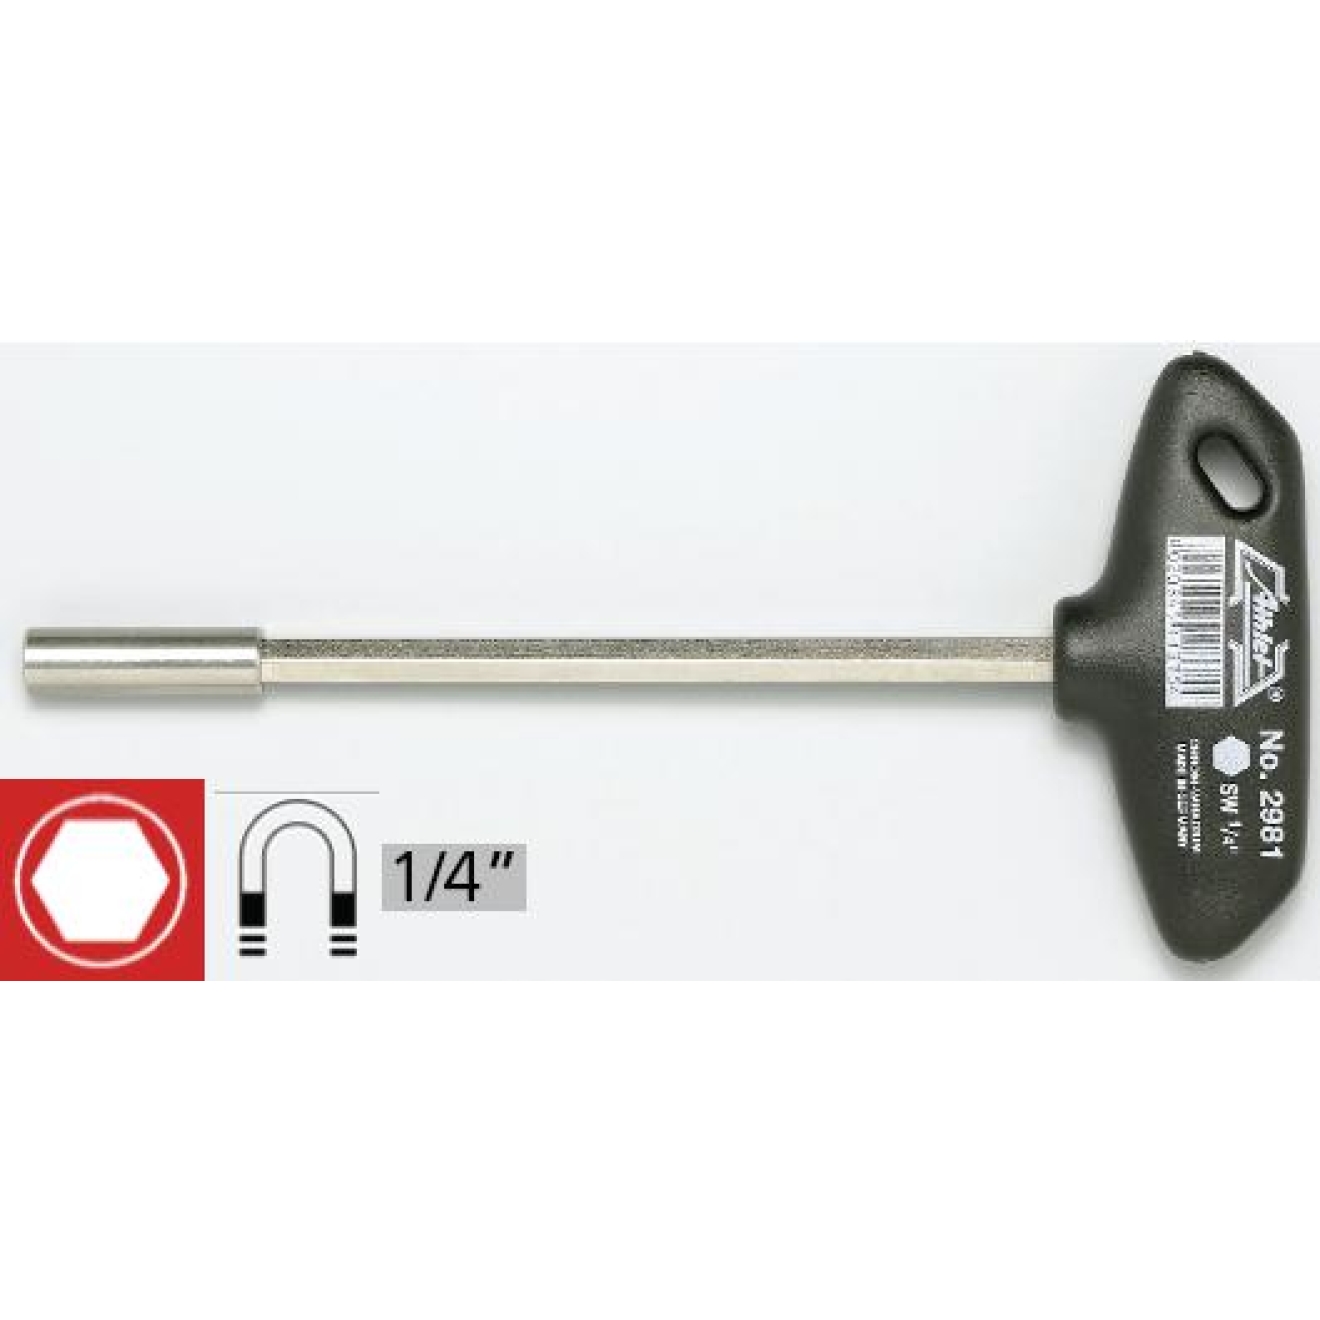 WITTE ® Bithalter Griff mit 150 mm Schaft bitholder für 1/4" Bits magnetisch NEU 